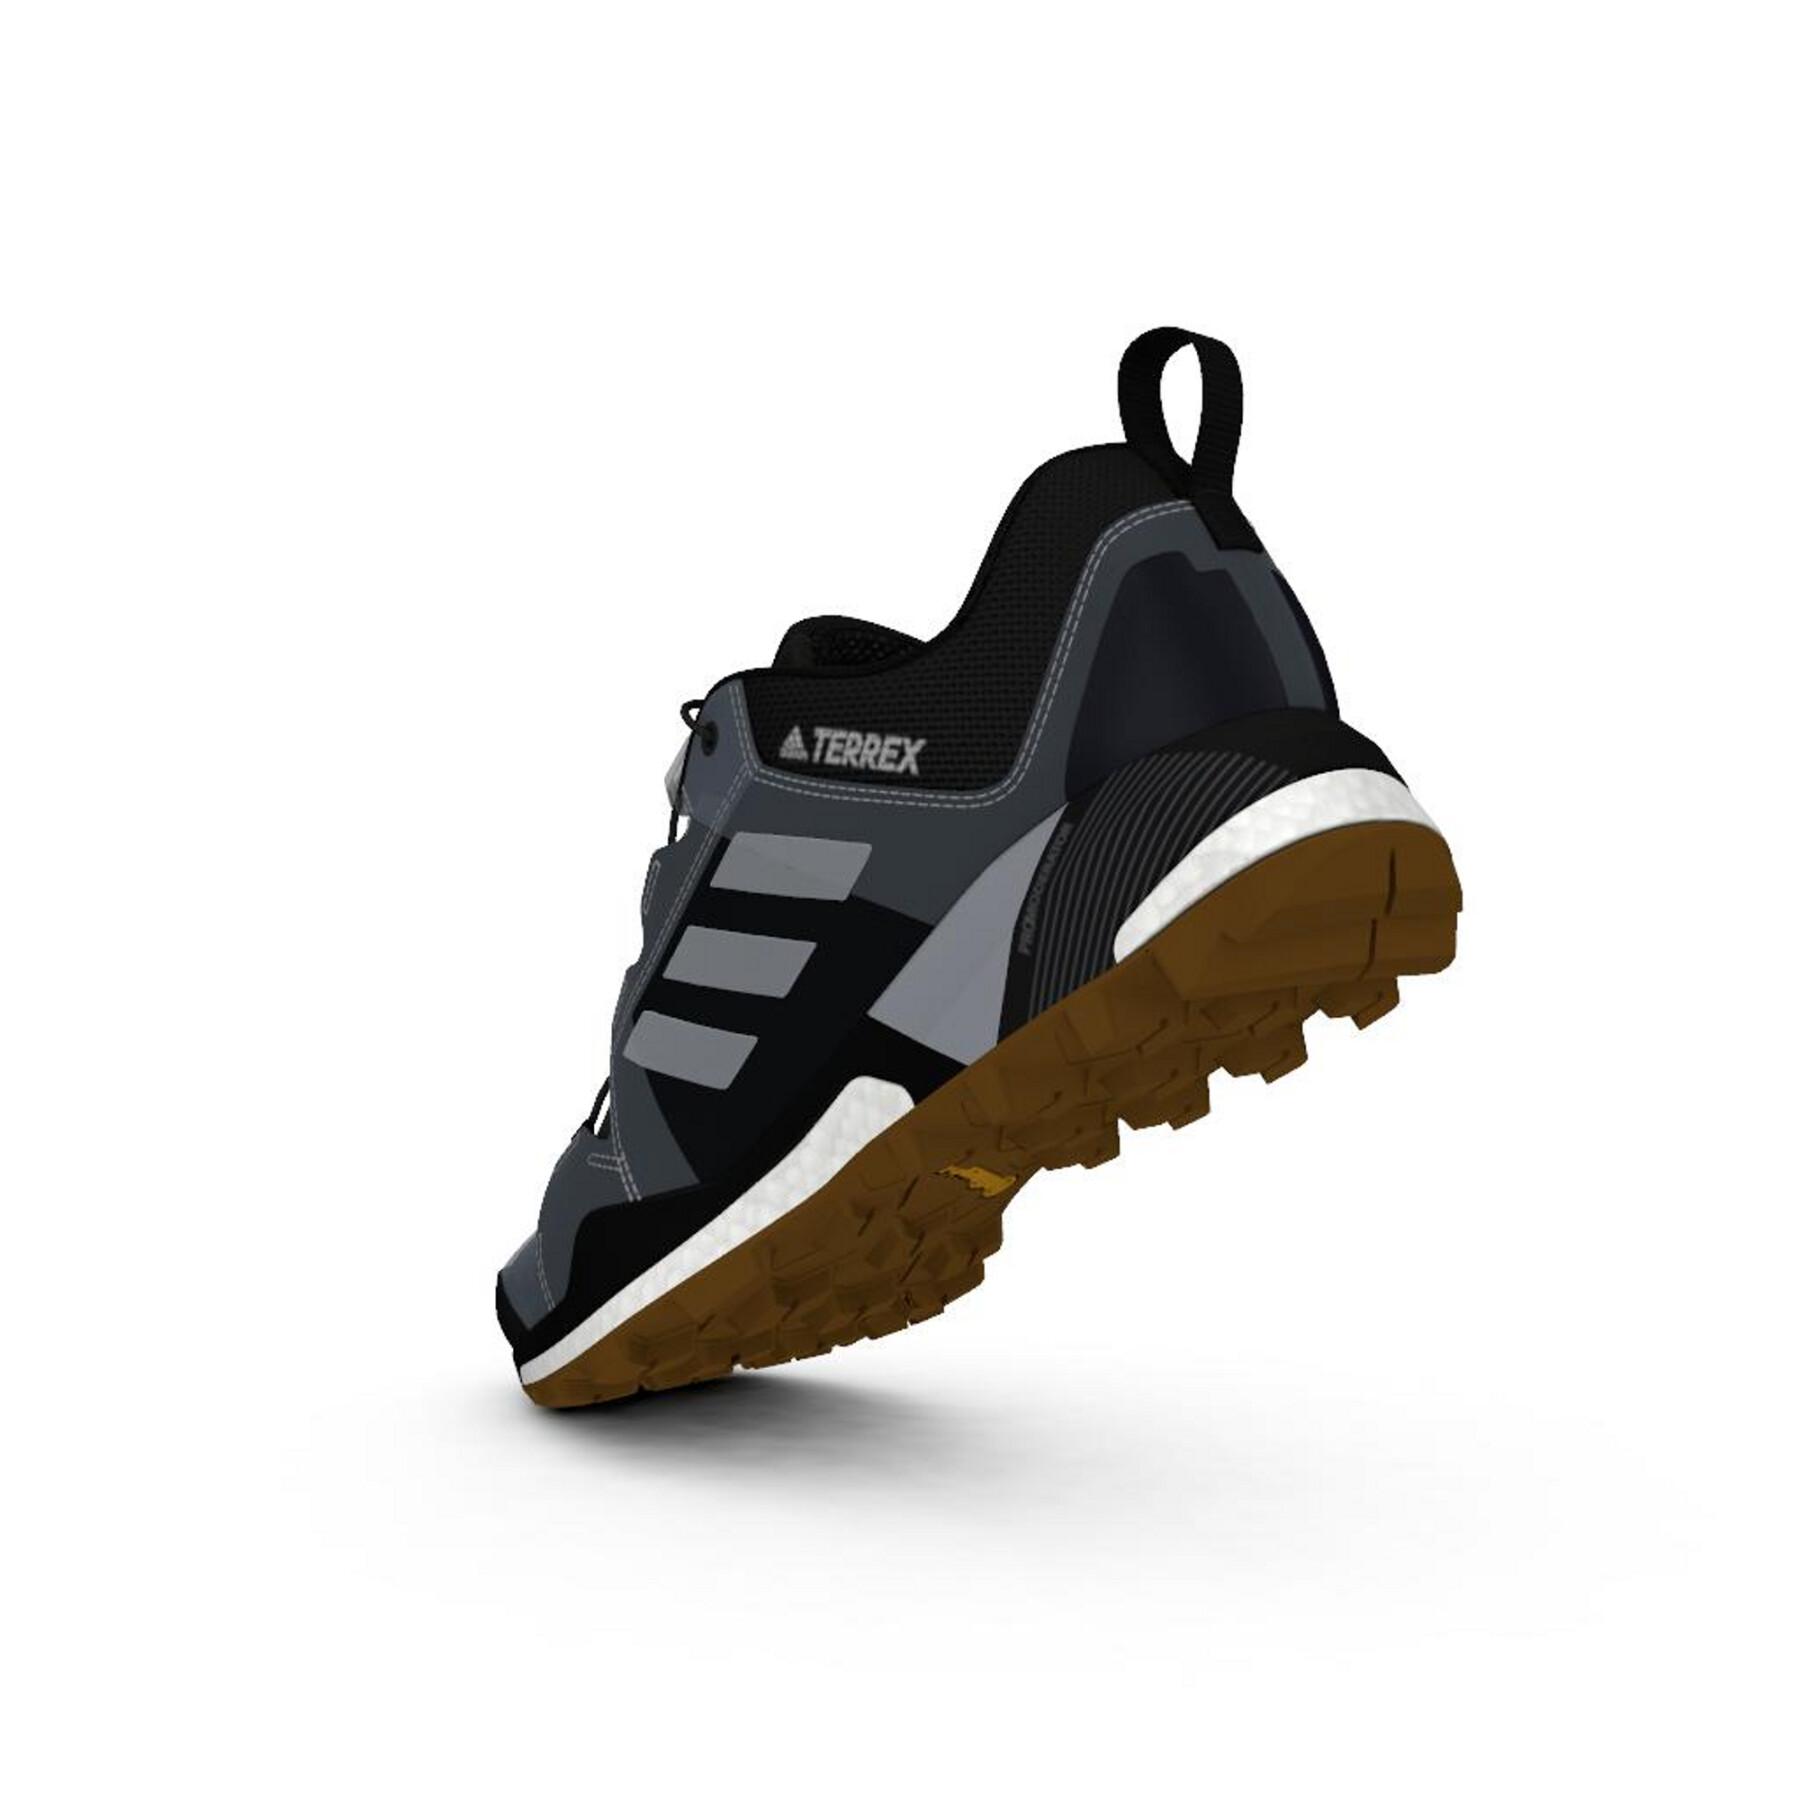 Trailrunning-Schuhe adidas Terrex Skychaser GTX